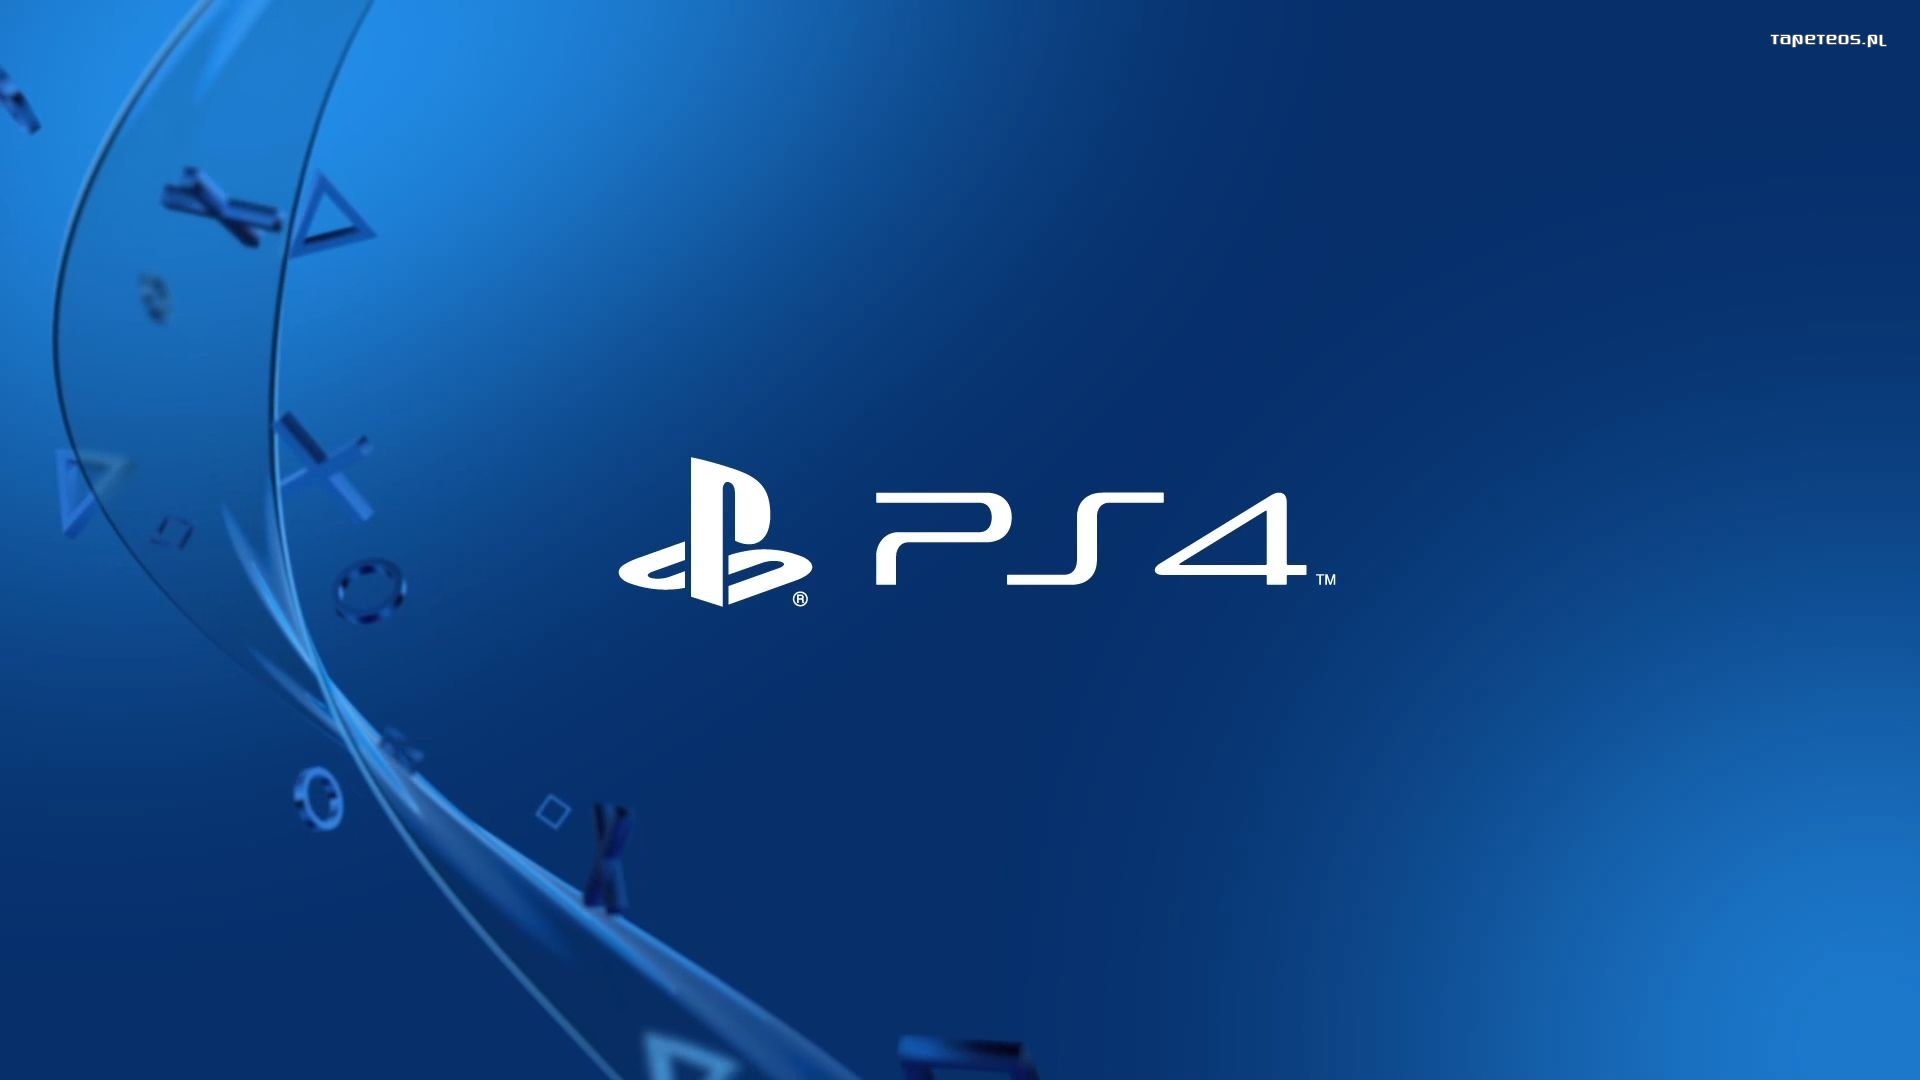 Sony Playstation 4 004 Logo, Ciemny Niebieski